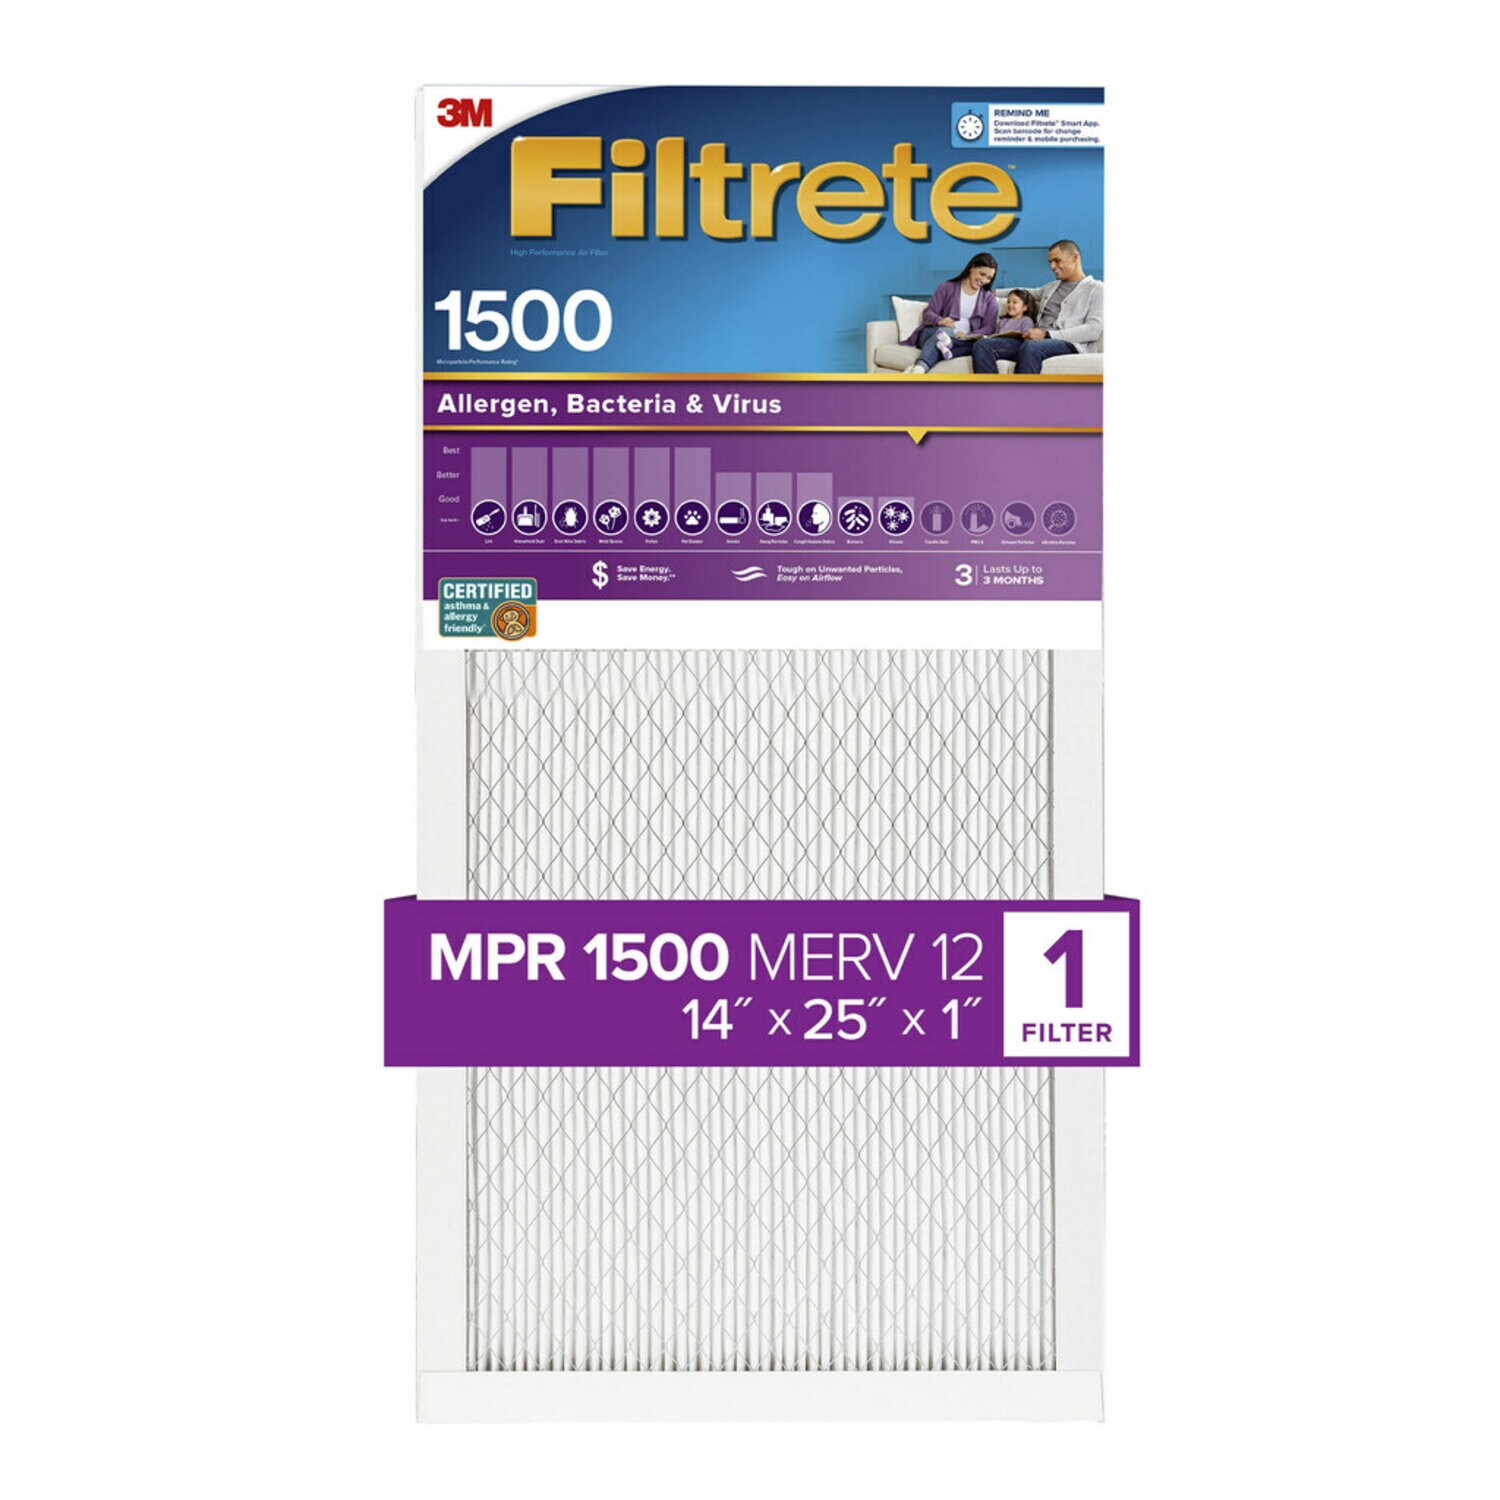 7100268220 - Filtrete High Performance Air Filter 1500 MPR 2004-4, 14 in x 25 in x 1 in (35.5 cm x 63.5 cm x 2.5 cm)